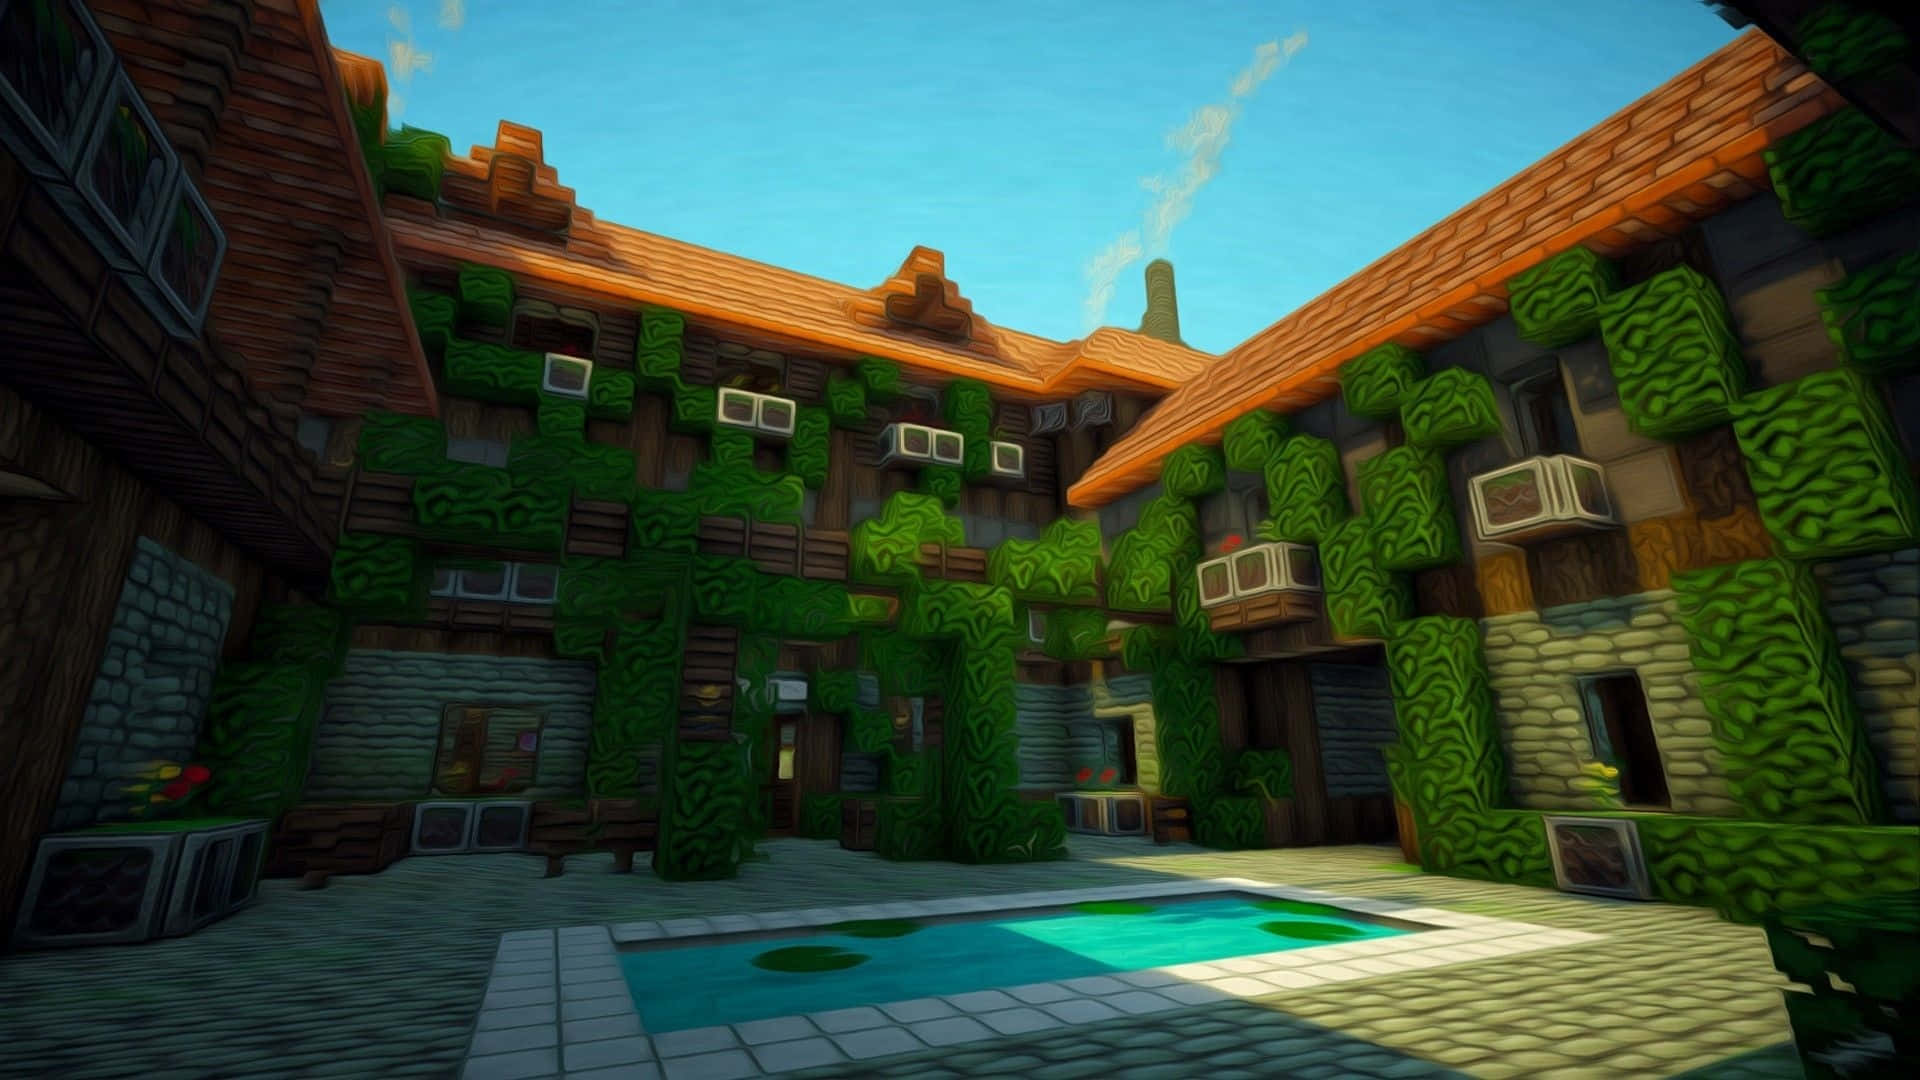 Erkundedie Magische Minecraft-welt Und Baue Spektakuläre Häuser.